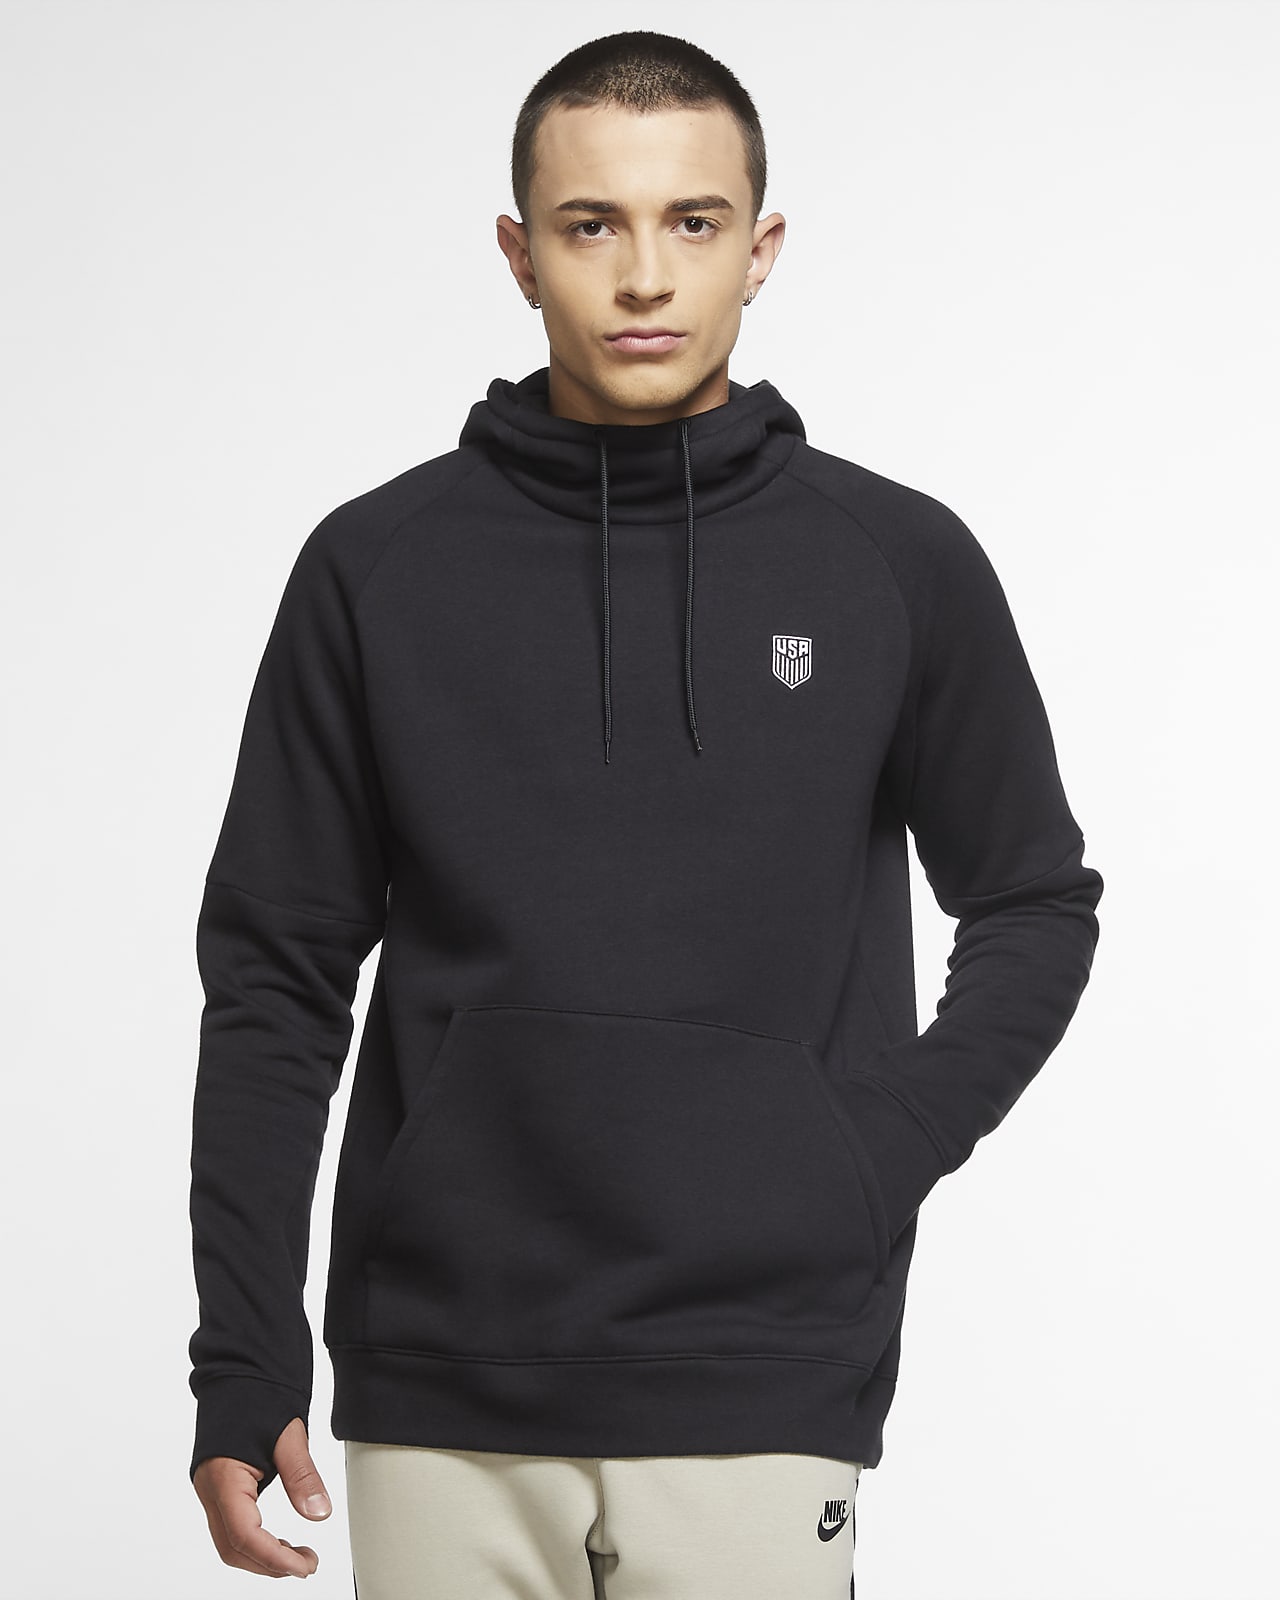 U.S. Men's Fleece Pullover Soccer Hoodie. Nike.com